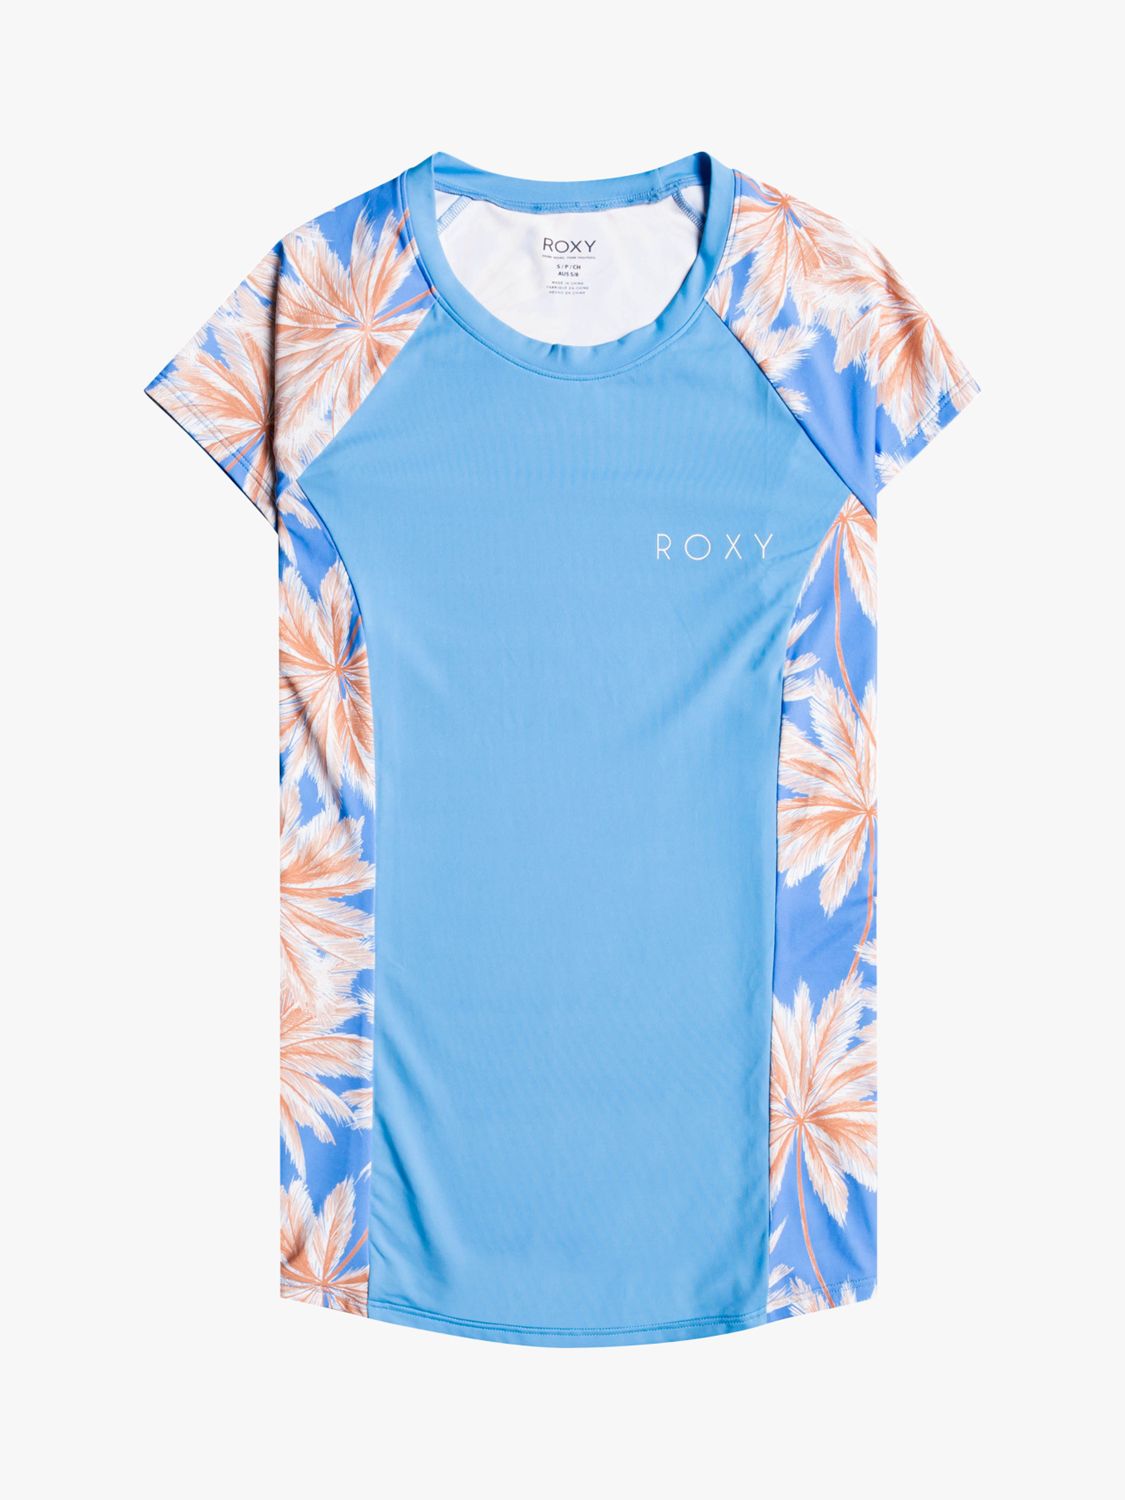 Roxy Floral Stretch Rash Vest, Blue/Multi, L